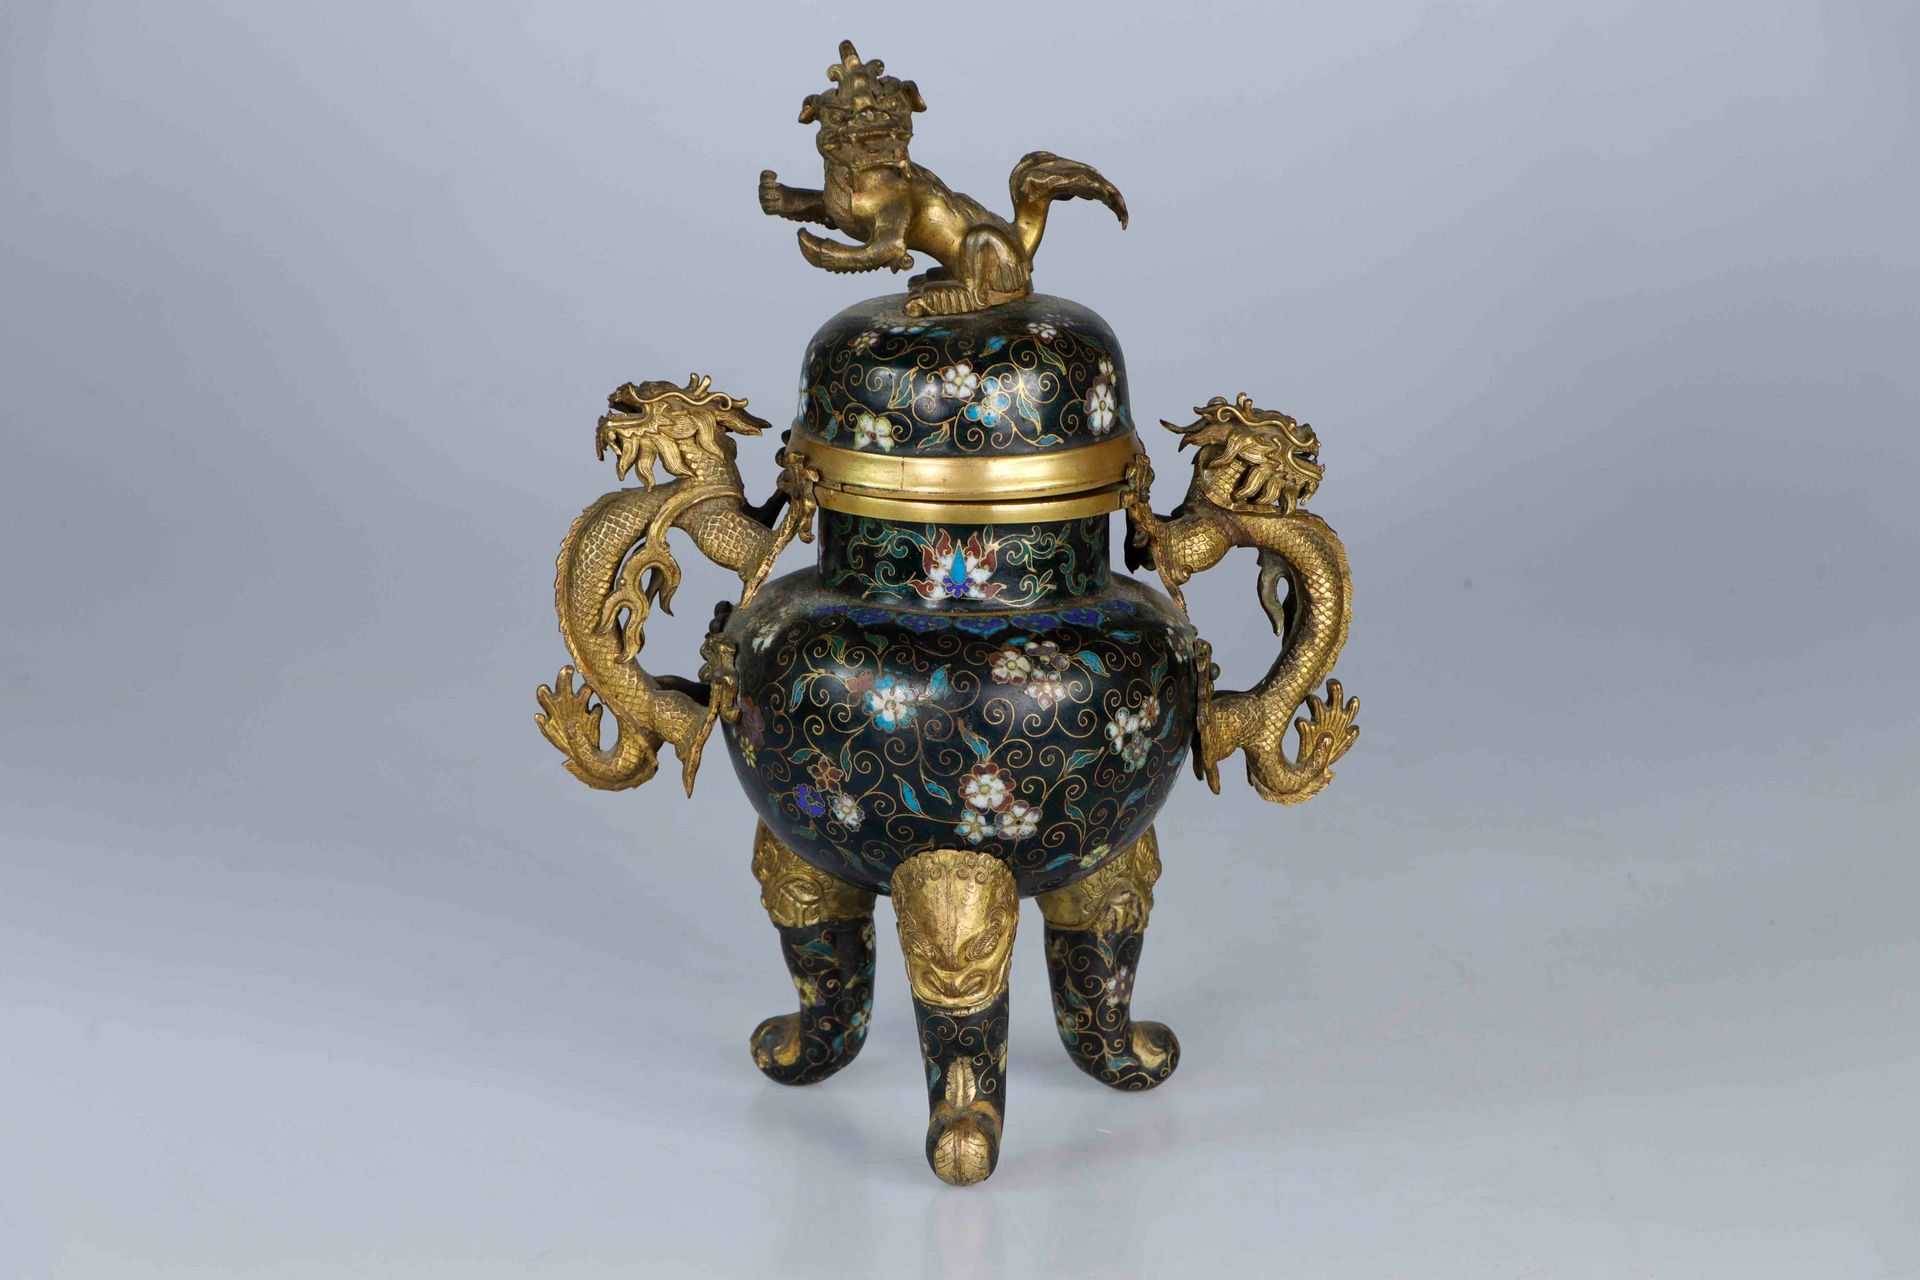 Null 中国，19世纪。鎏金铜合金和黑底多色掐丝珐琅覆盖的鼎形香炉，安装在三个奇美拉头形的弯腿上，圆拱形的炉身饰有轮圈和花朵，把手为龙形。盖子是佛教狮子的形状&hellip;